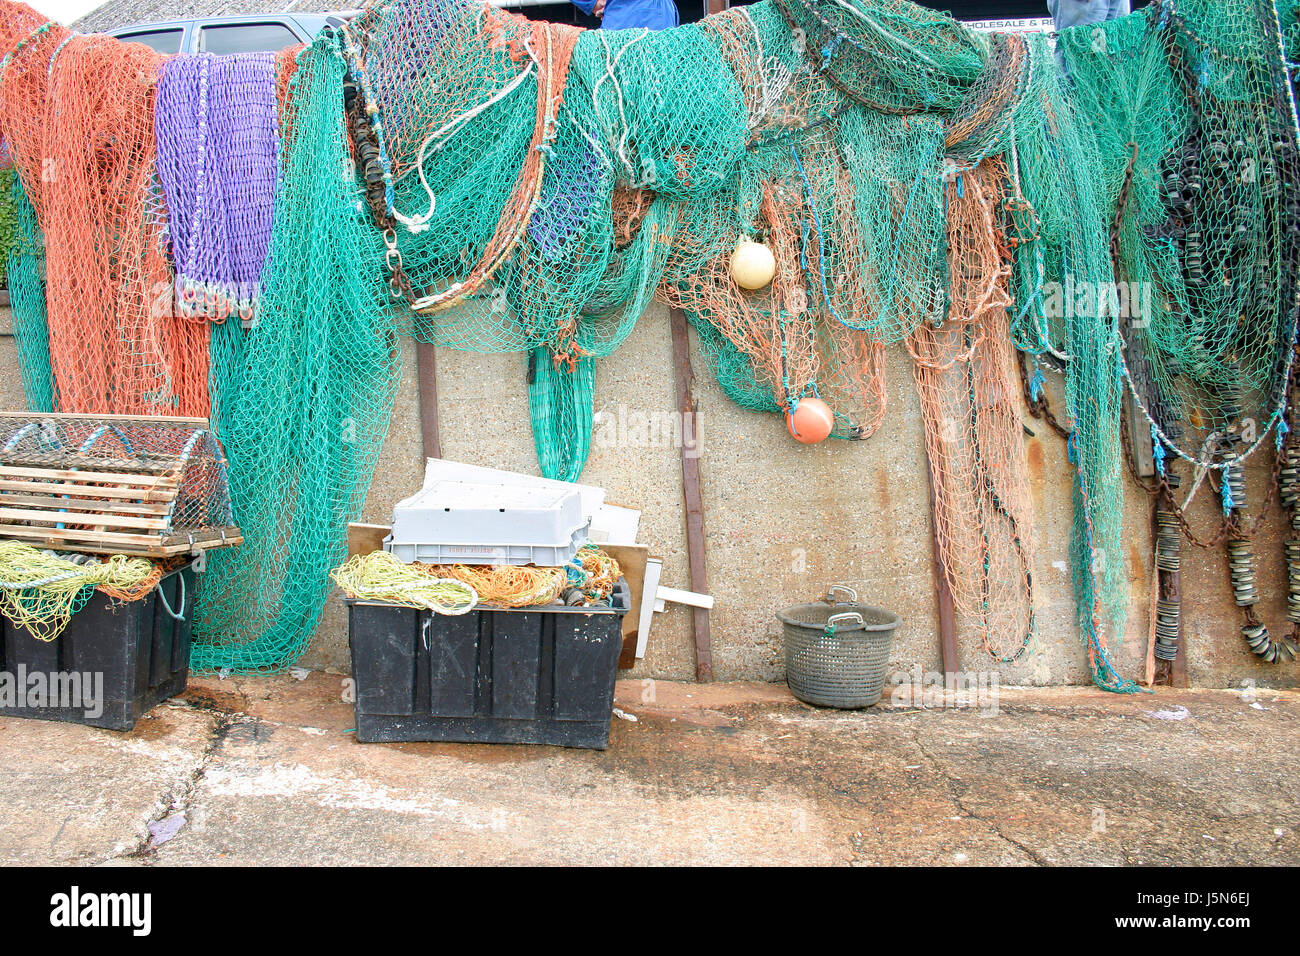 Farbigen oder bunten Fischernetze hängen in der Sonne getrocknet. Stockfoto